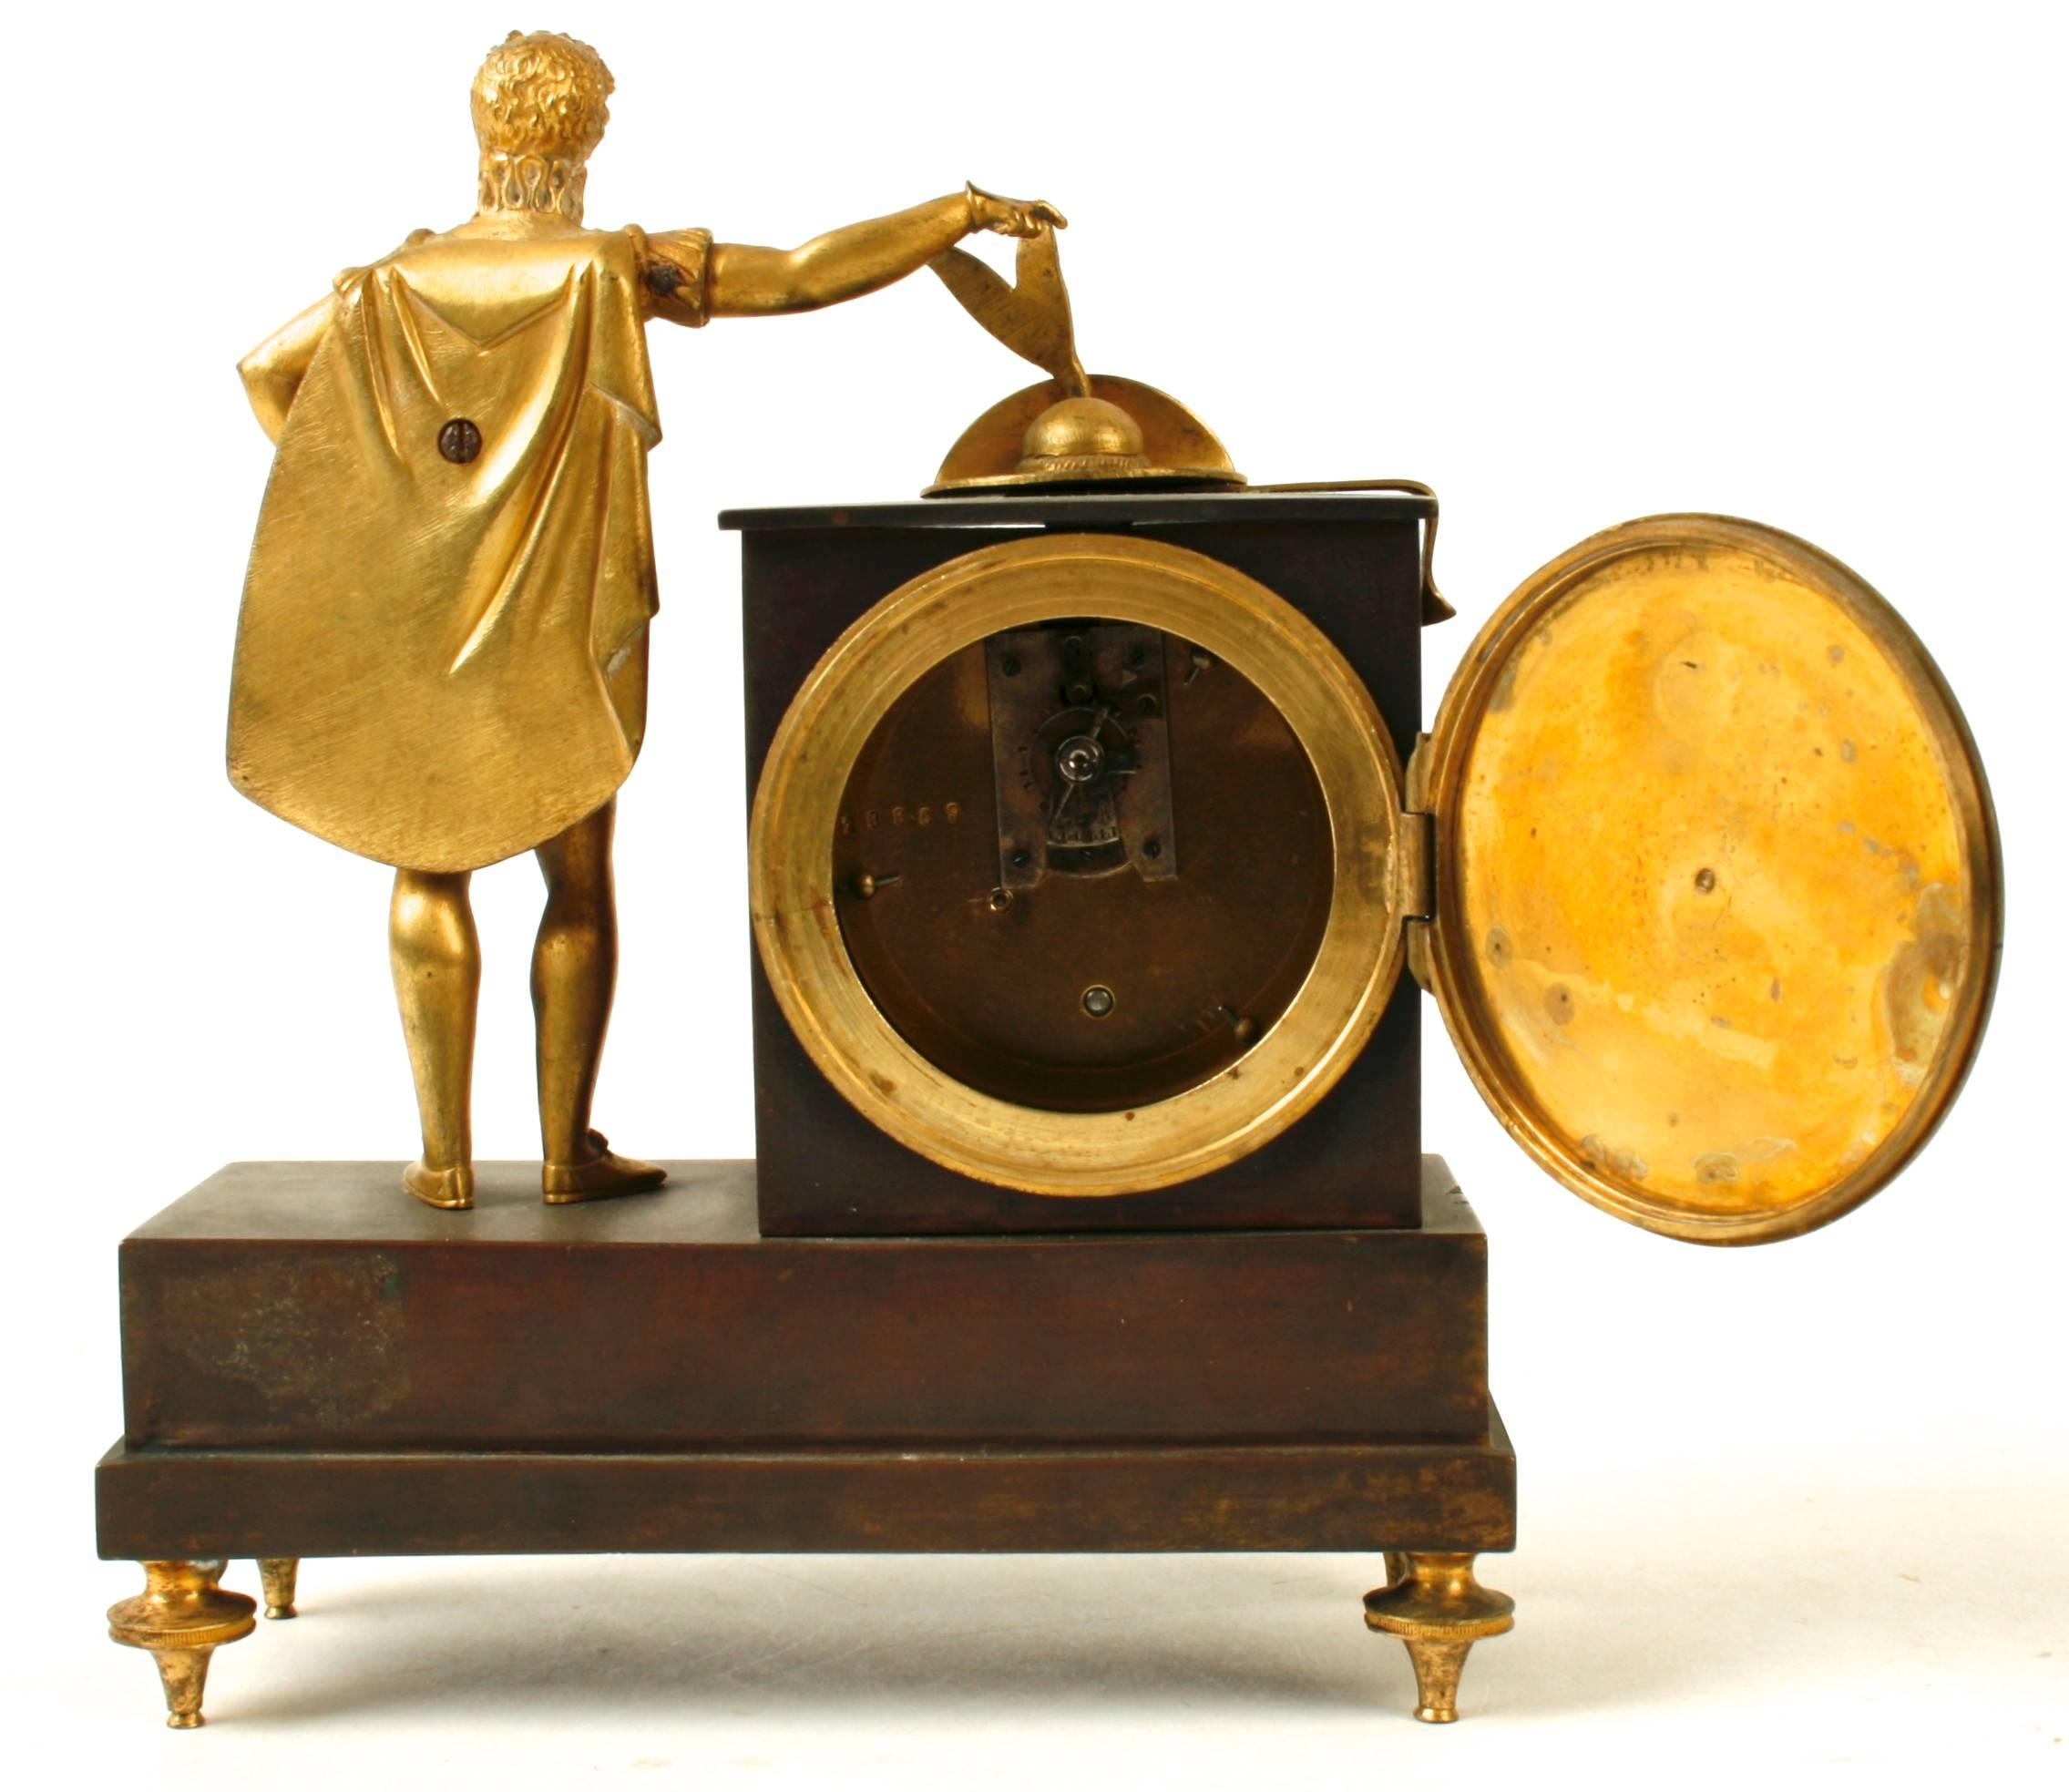 Diese schöne bronzene Kaminuhr stammt aus dem französischen Empire und zeigt eine stehende Figur, die ihren Federhut auf die Uhr setzt. Das emaillierte Zifferblatt der Uhr ist von einem Rahmen aus gedrehtem Ormolu-Seil umgeben. Auf dem Sockel